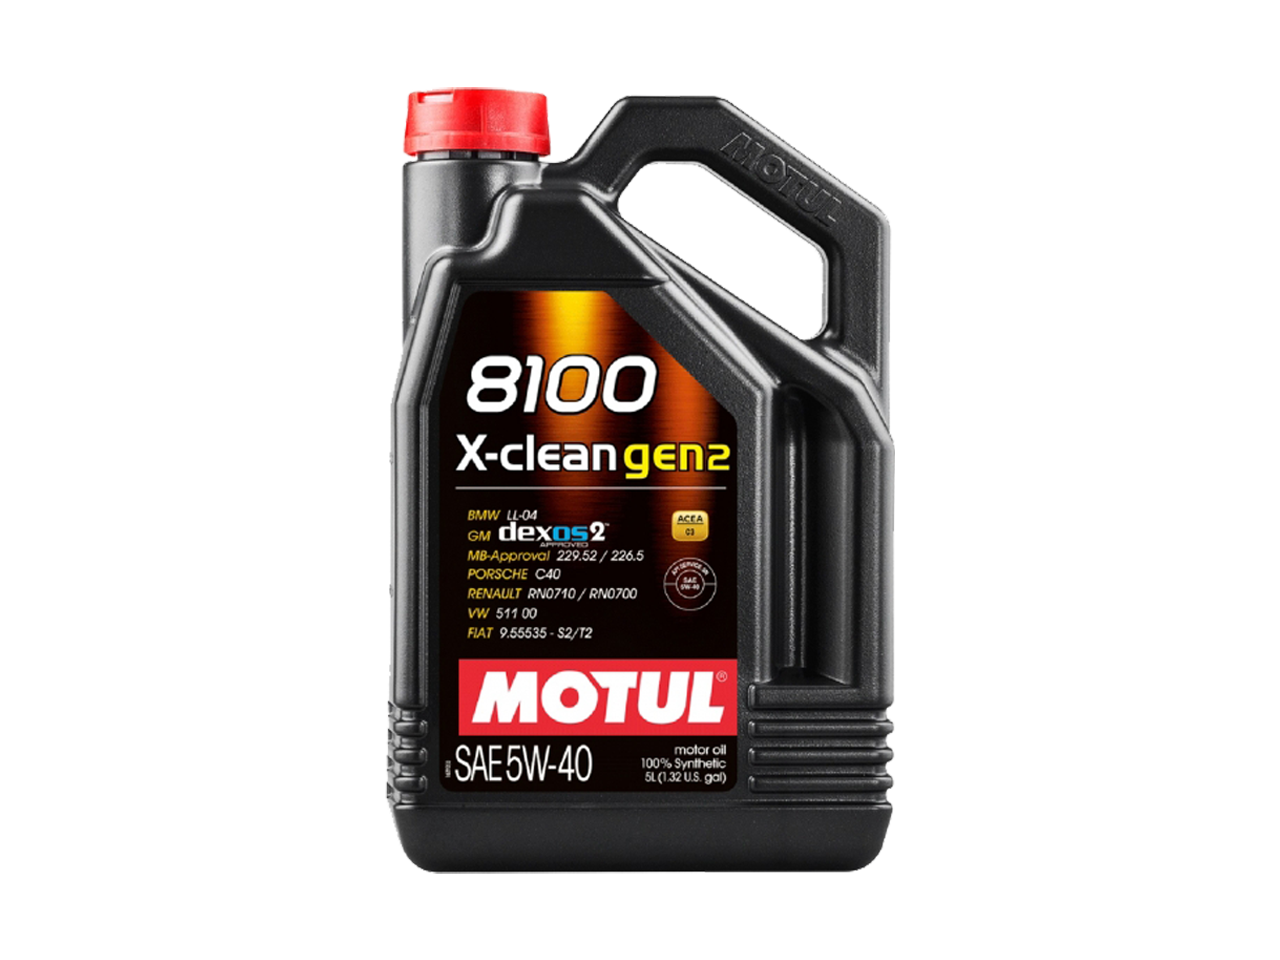 Купить недорого Моторное масло Motul 8100 X-clean GEN2 в Москве